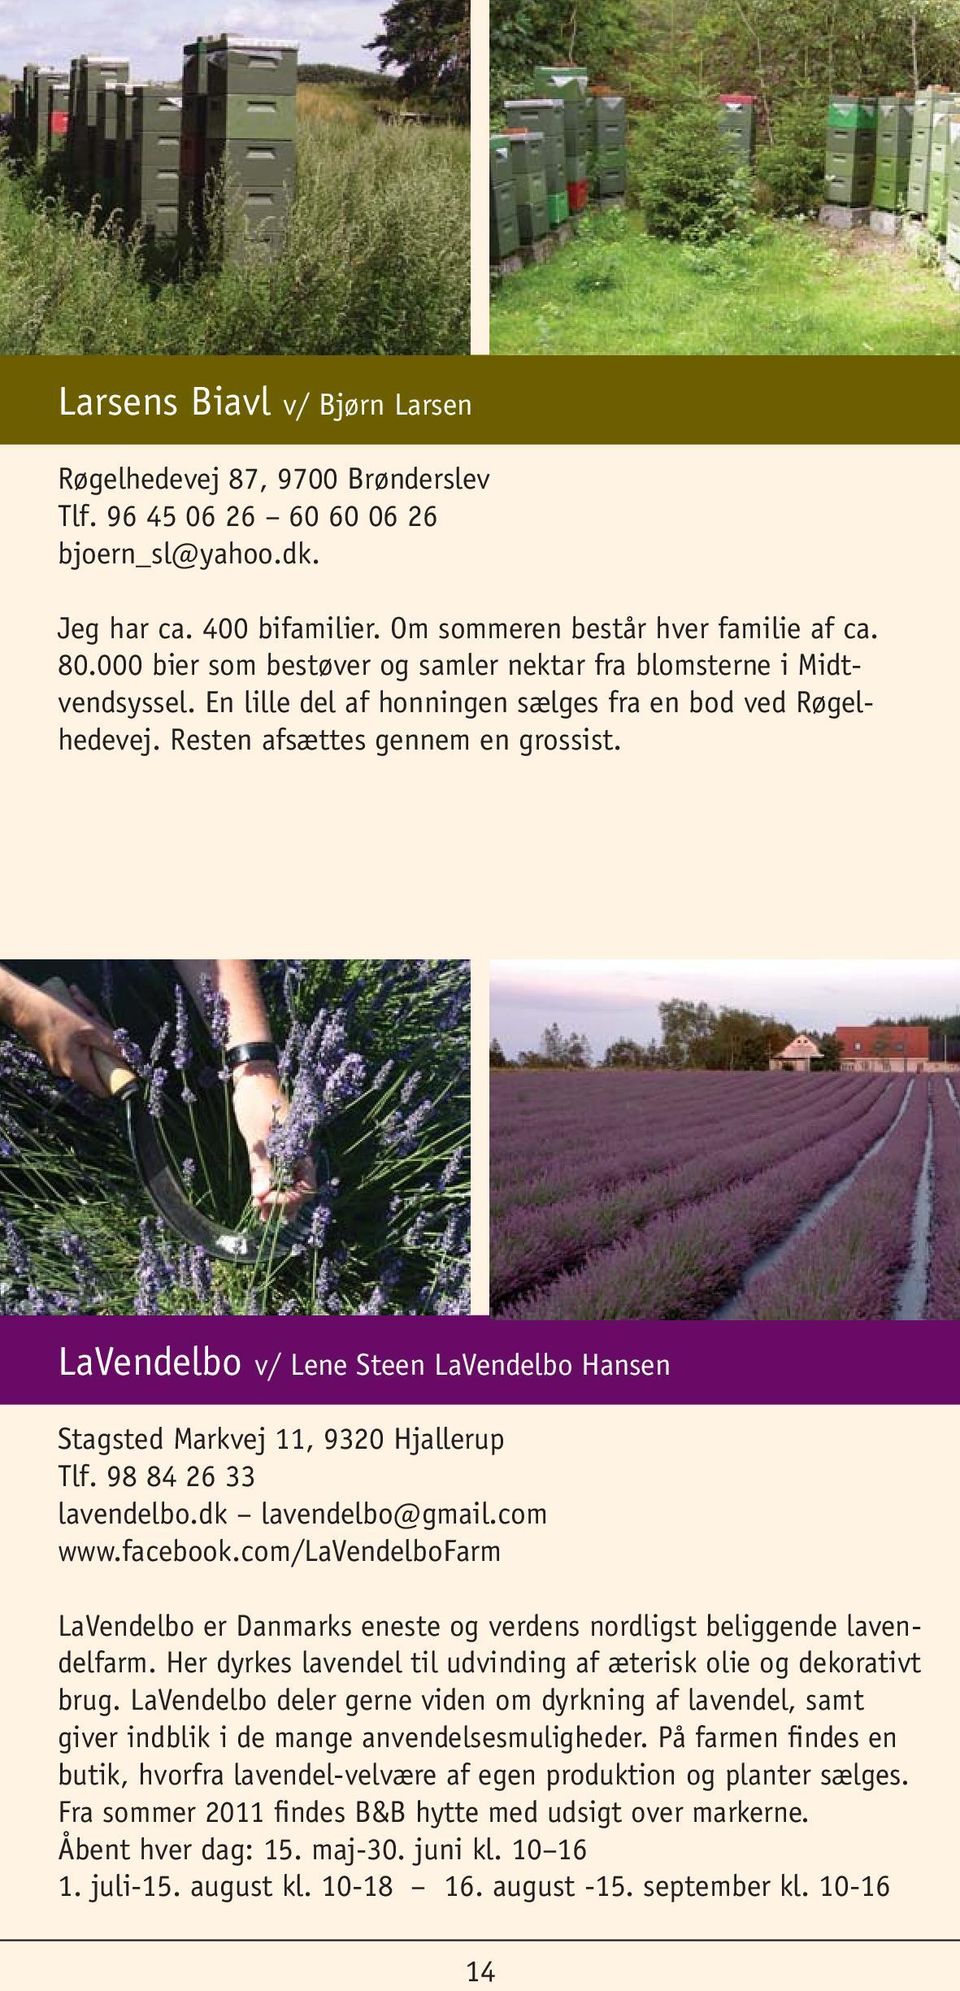 LaVendelbo v/ Lene Steen LaVendelbo Hansen Stagsted Markvej 11, 9320 Hjallerup Tlf. 98 84 26 33 lavendelbo.dk lavendelbo@gmail.com www.facebook.